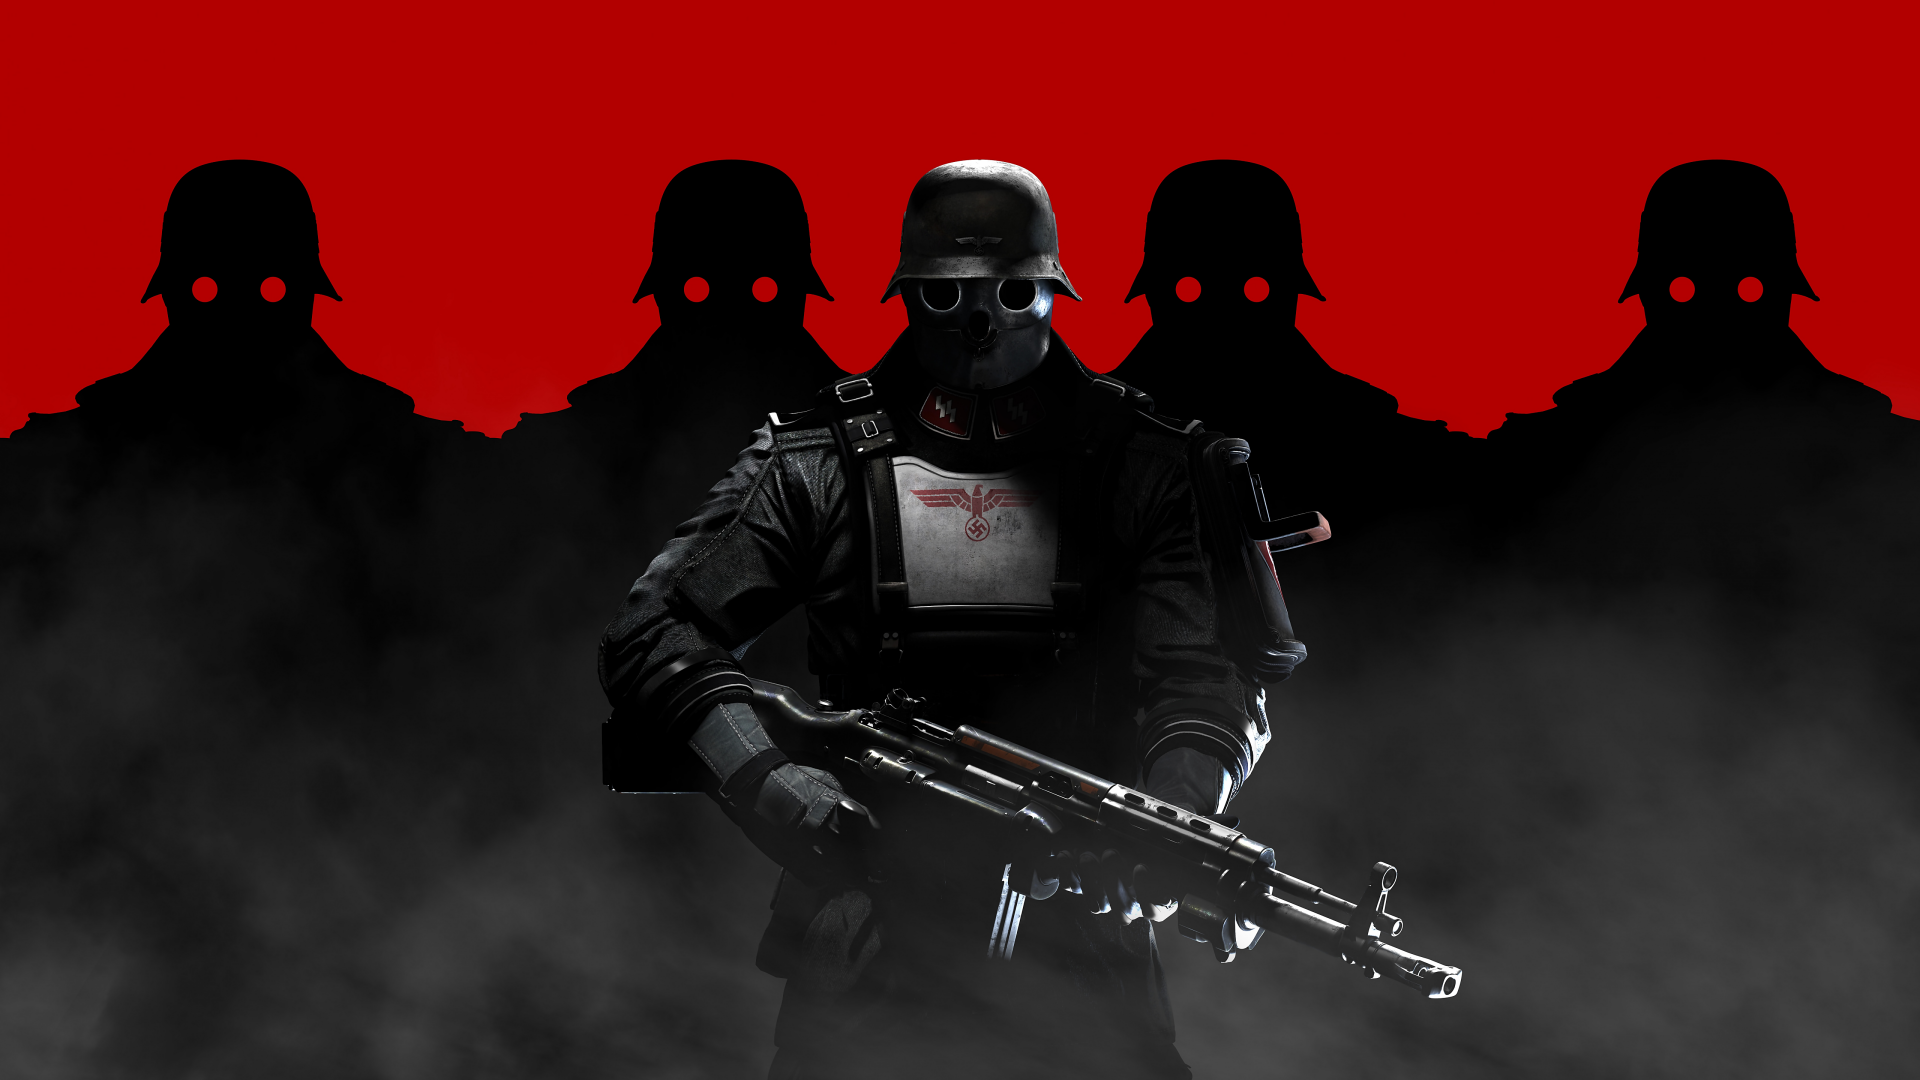 Comunidade Steam :: :: Wolfenstein: The New Order wallpaper